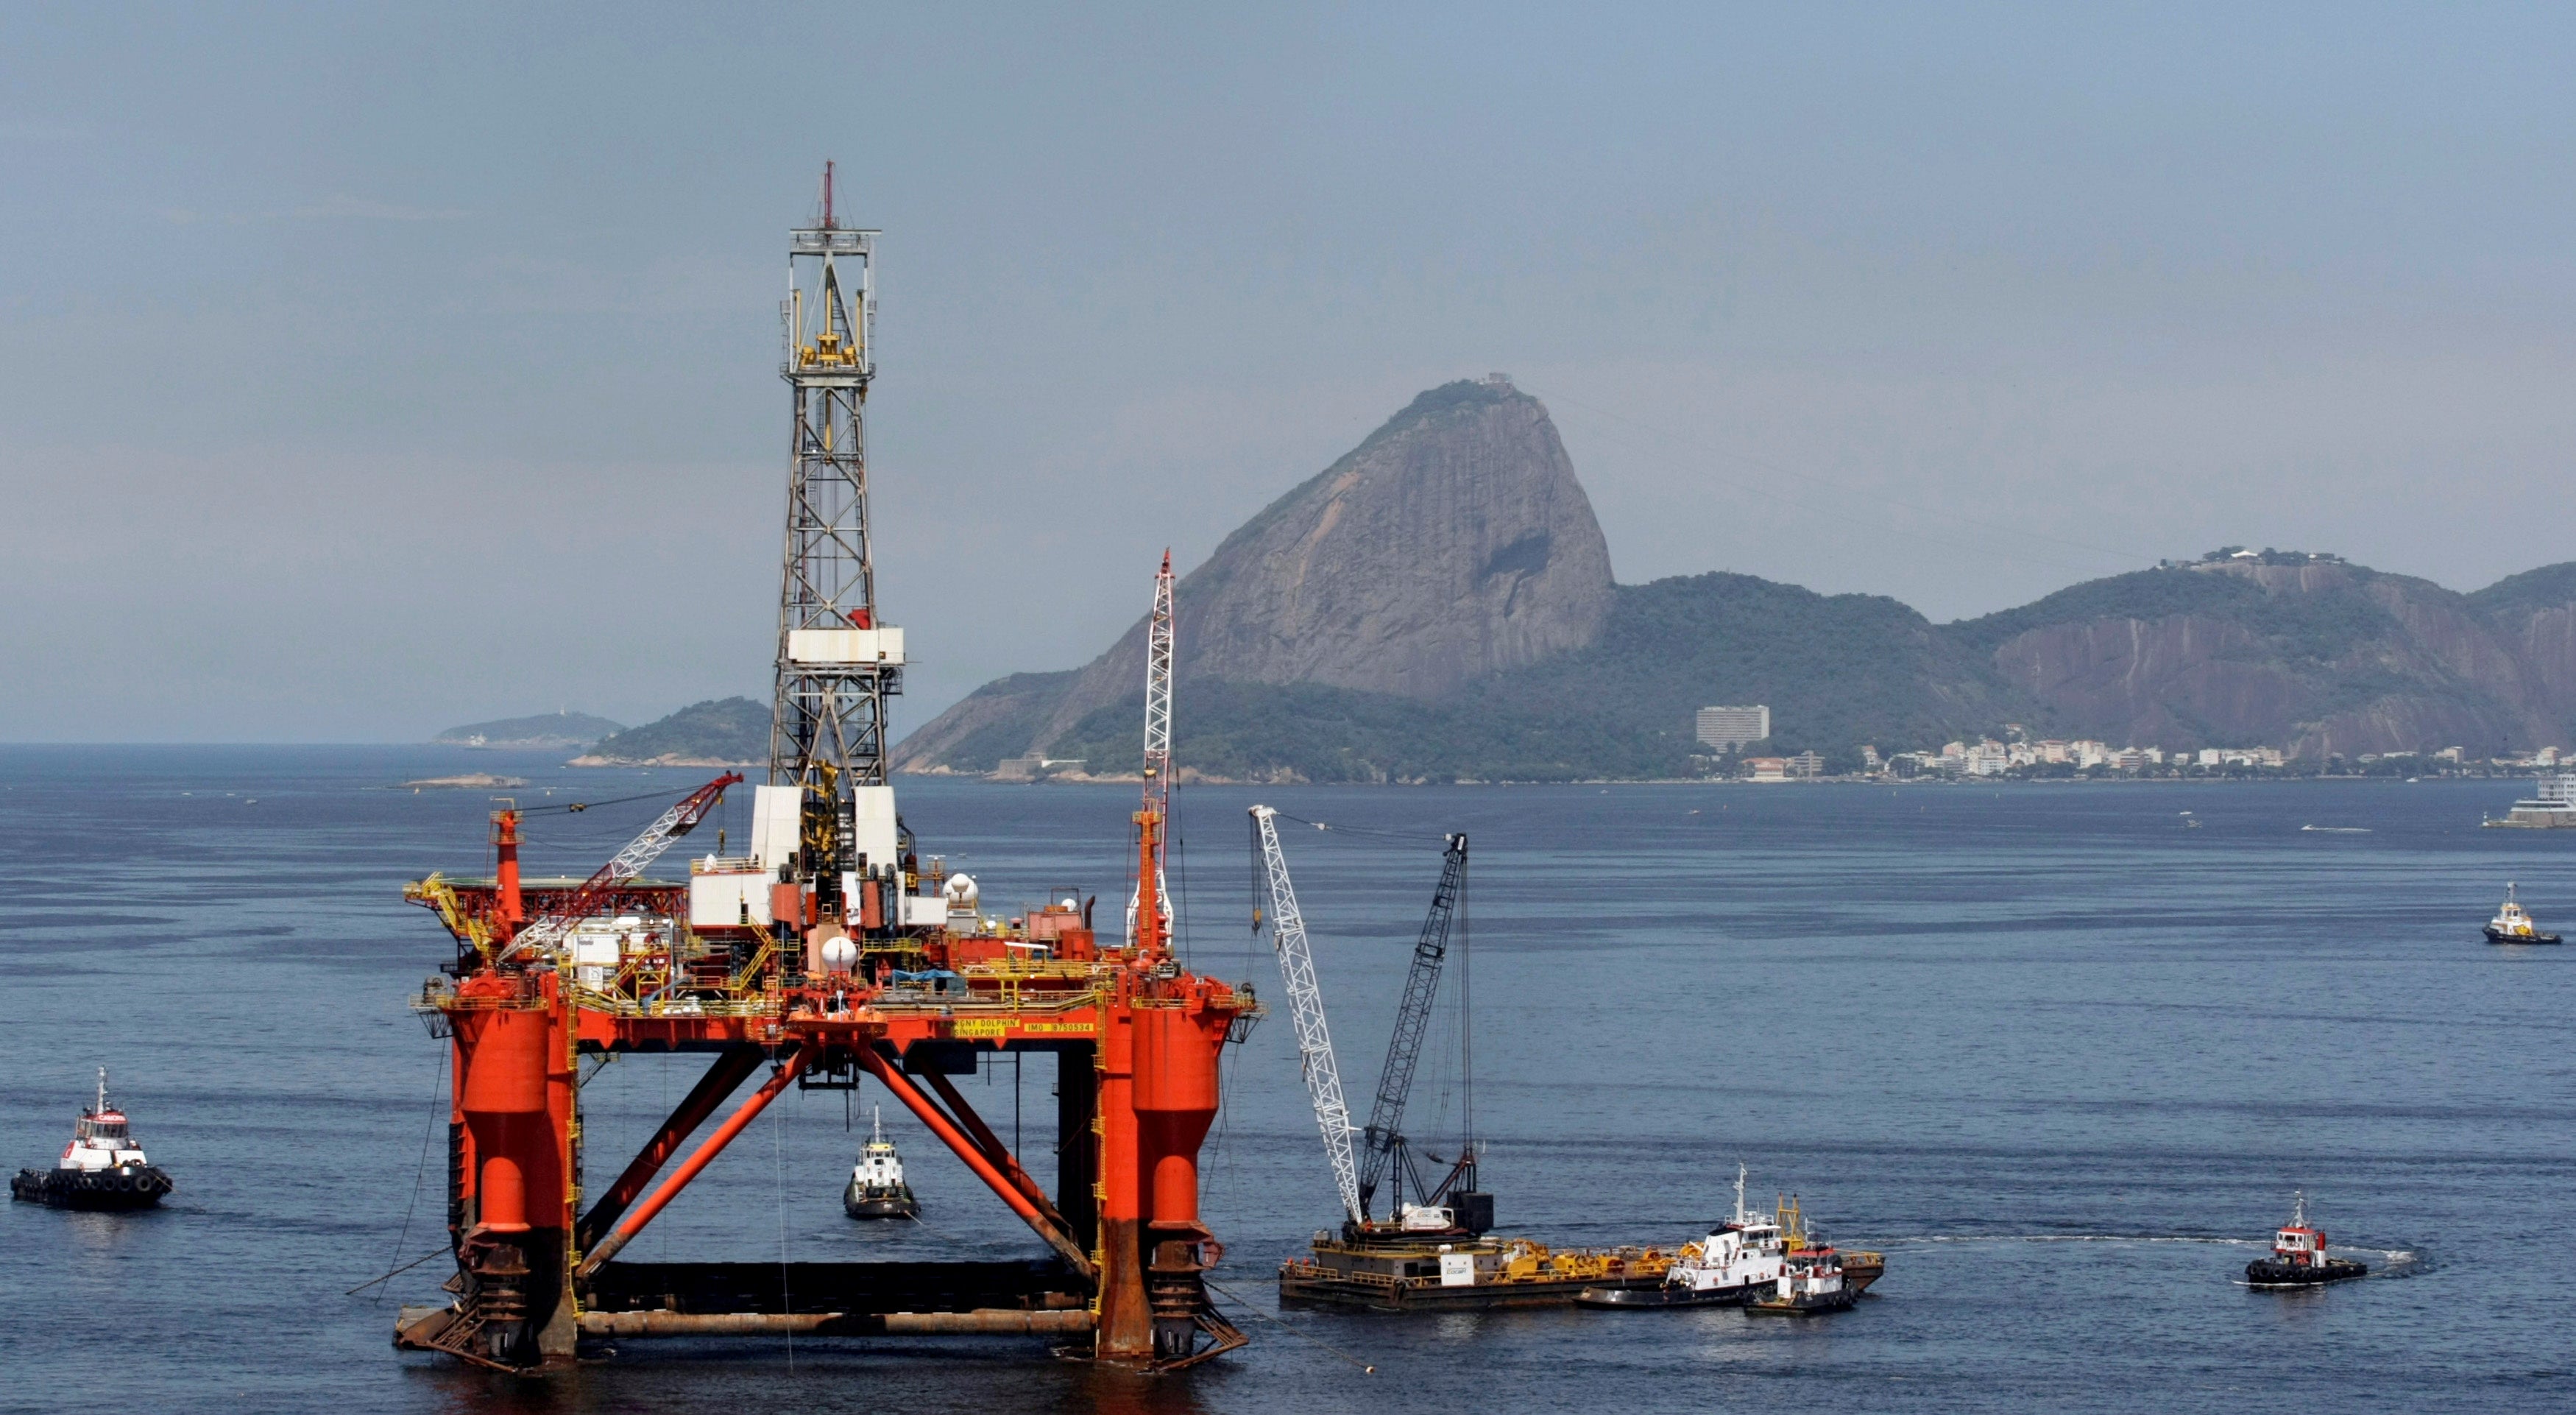 A Petrobras oil rig in a bay in Rio De Janeiro